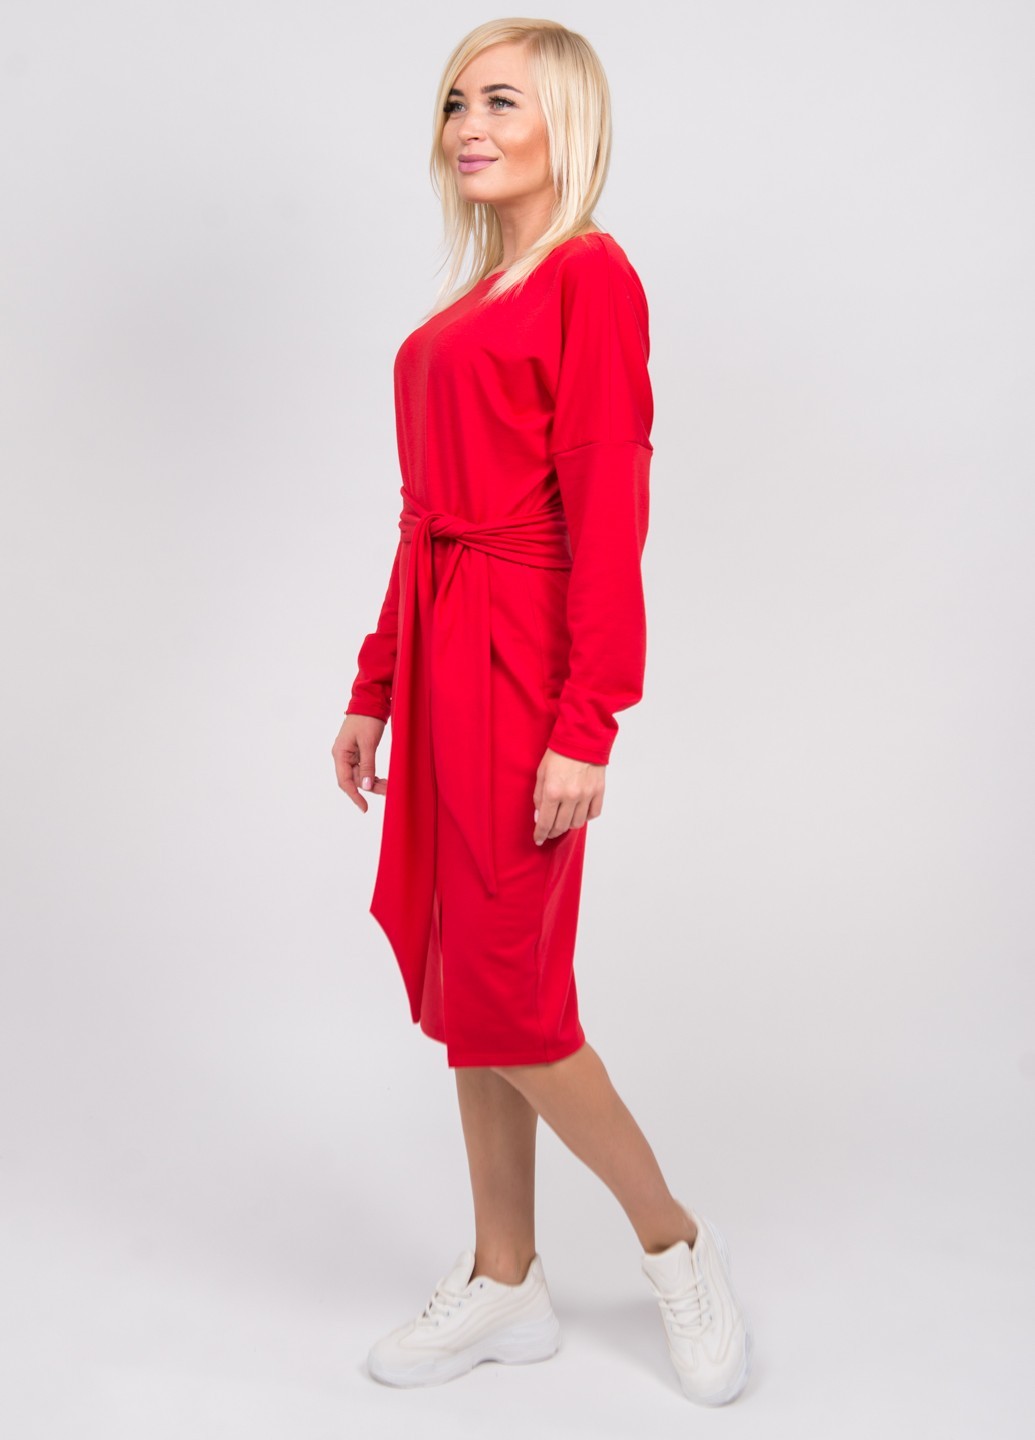 Платье женское трикотажное красное 02510 купить